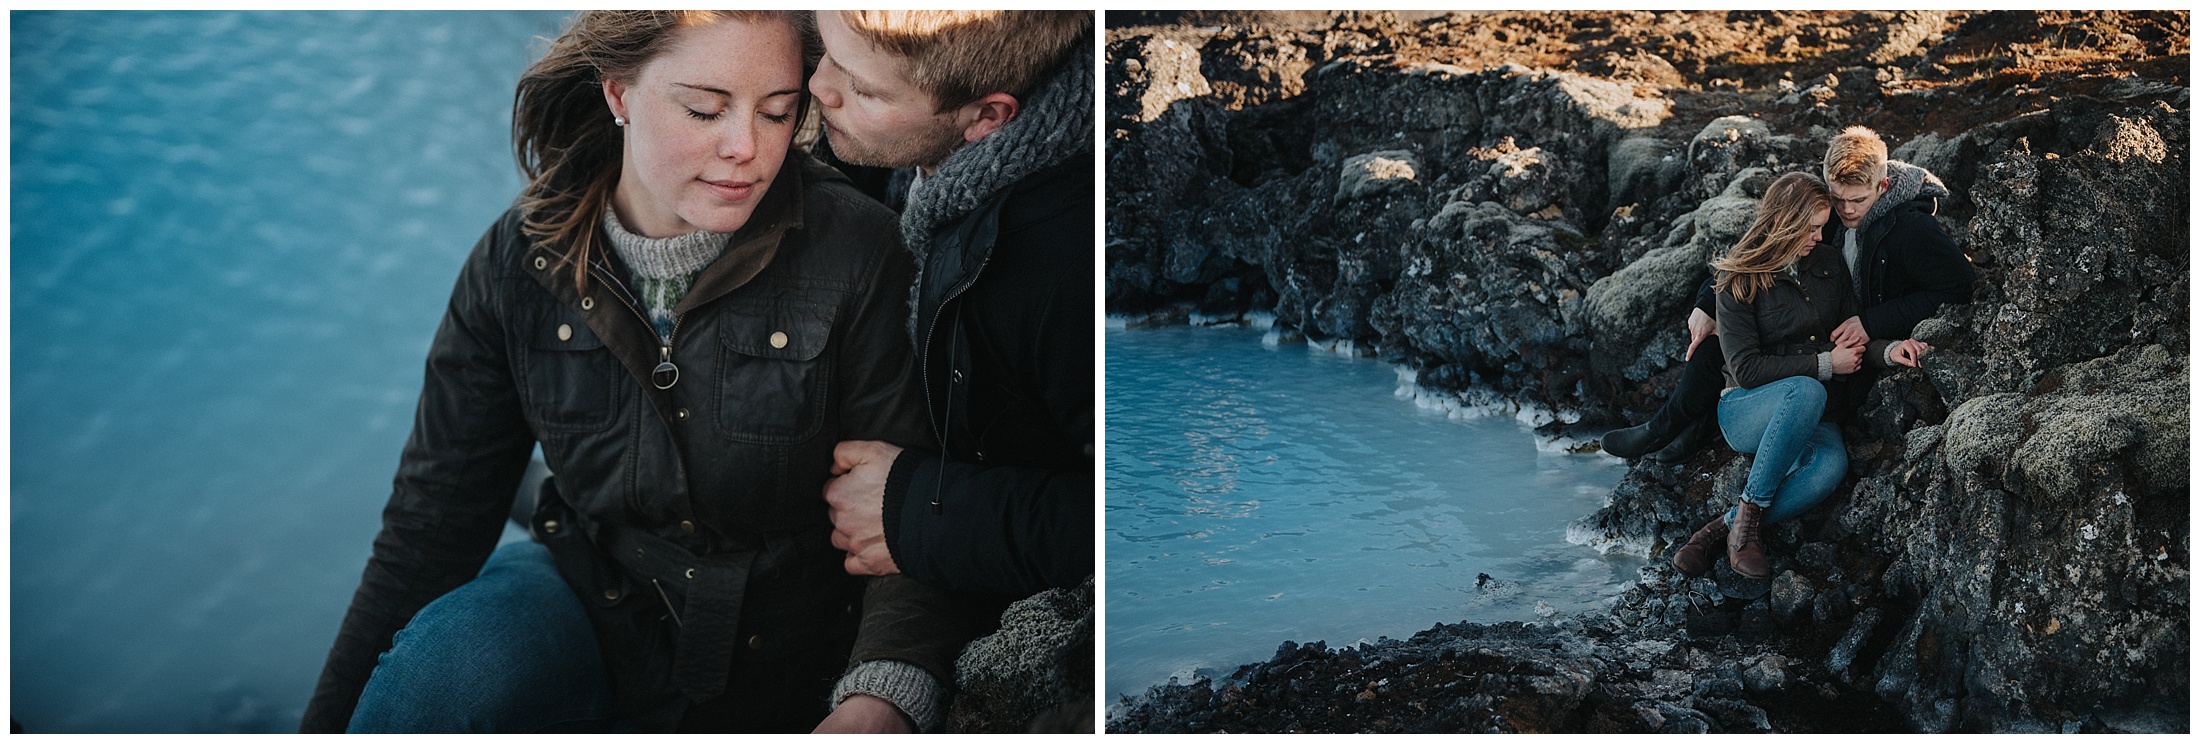 Kärleksfotografering på Island